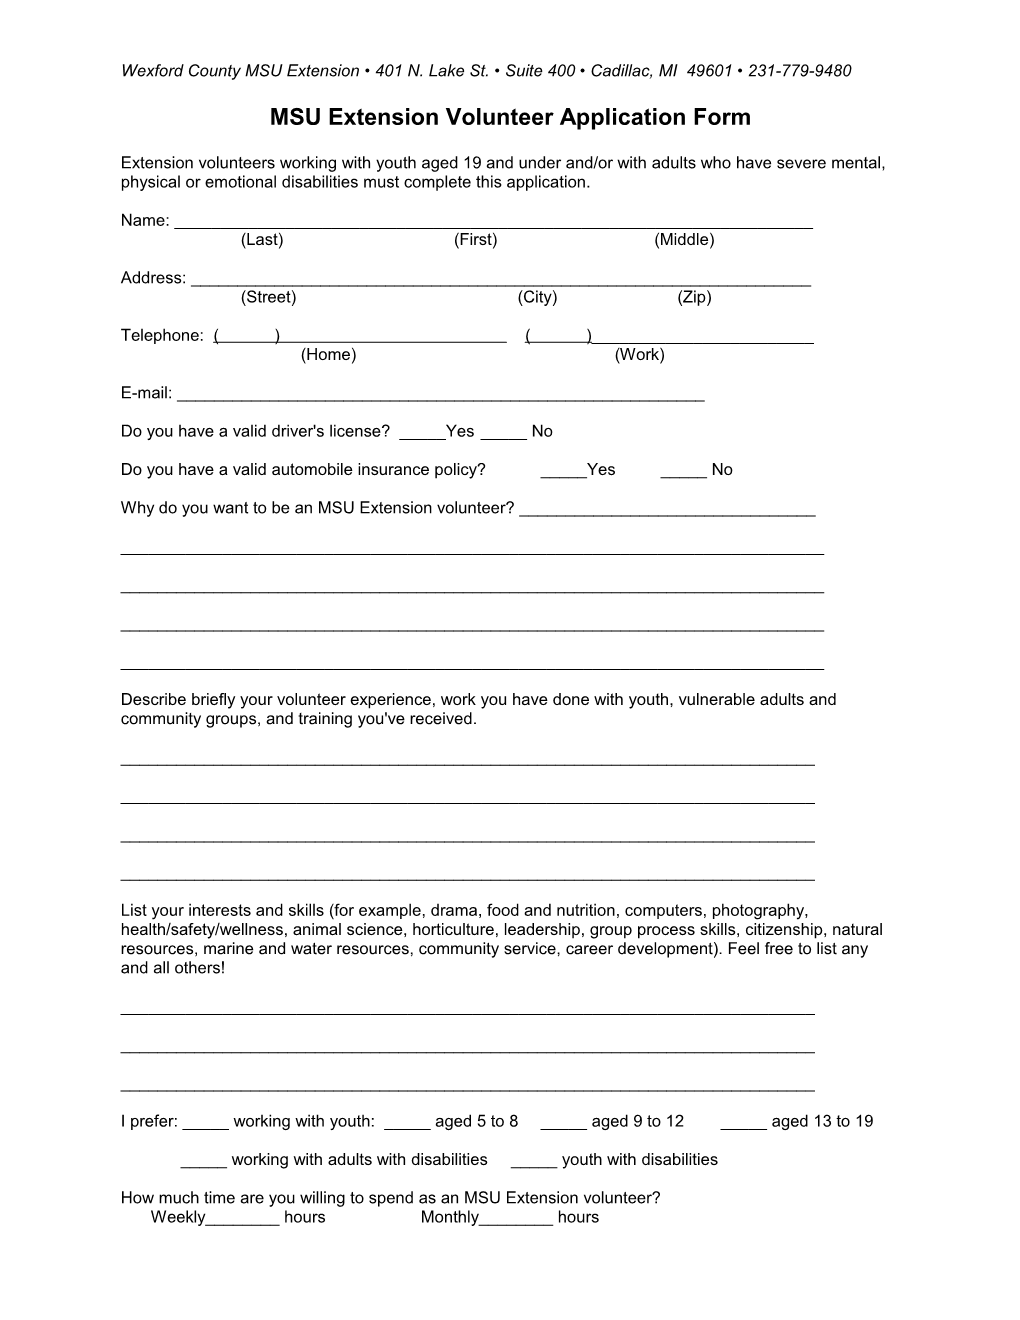 MSU Extension Volunteer Application Form